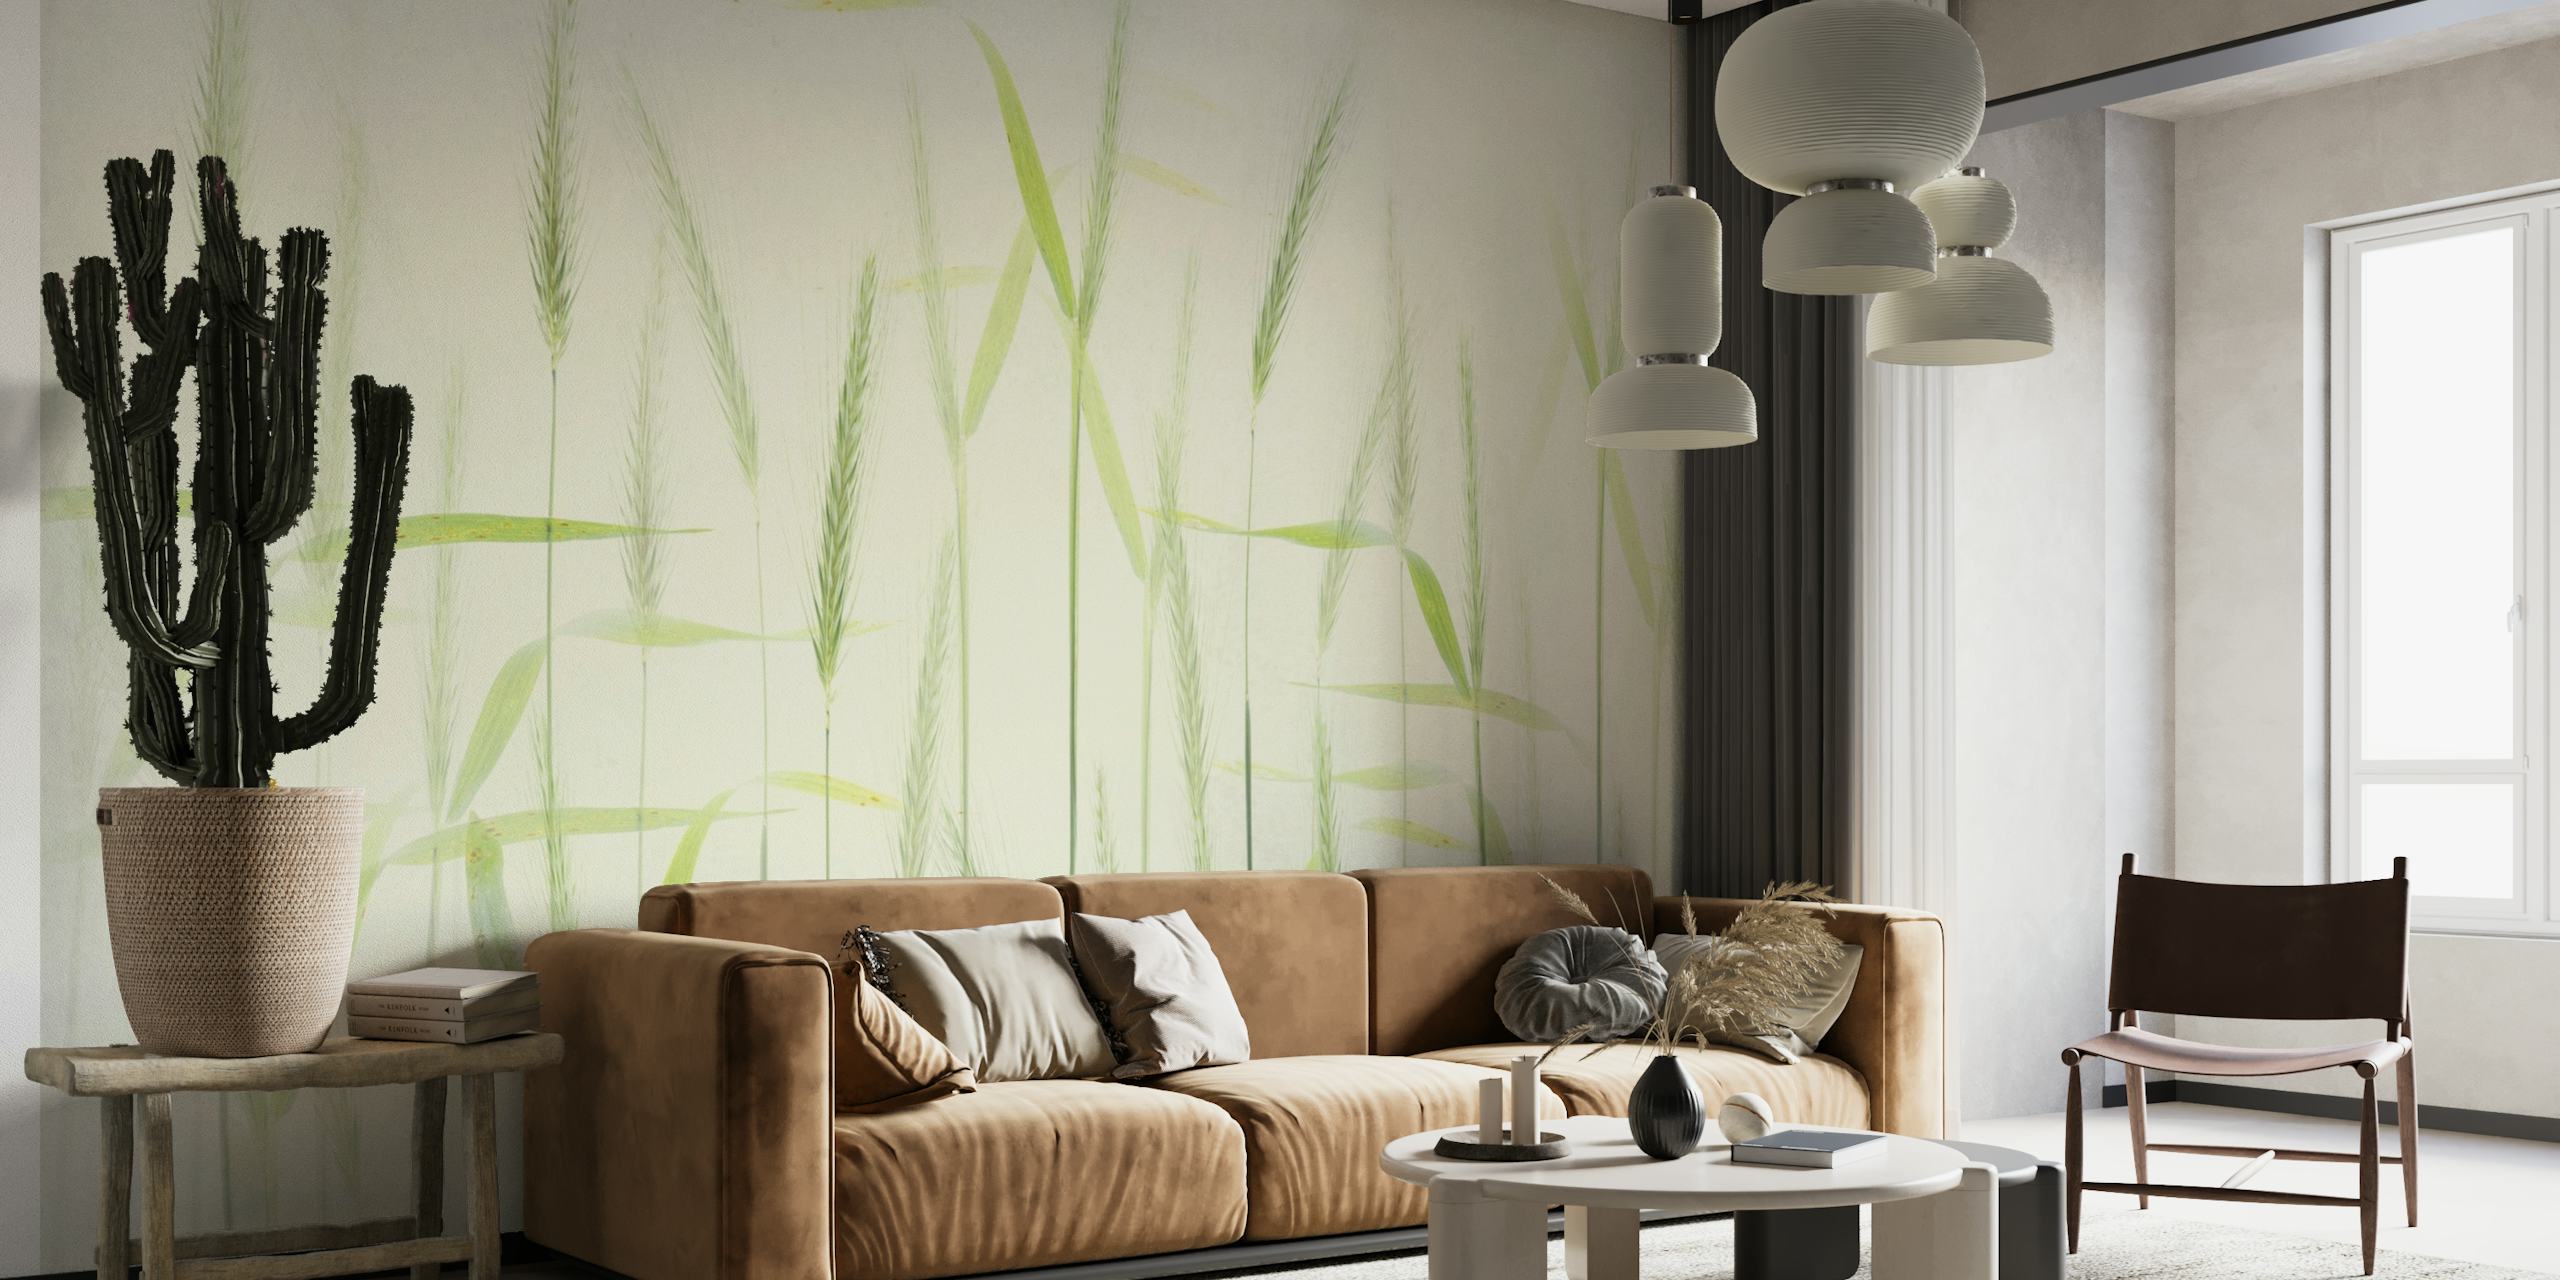 Peinture murale élégante de tiges de maïs douces avec de douces teintes vertes sur un fond blanc cassé.